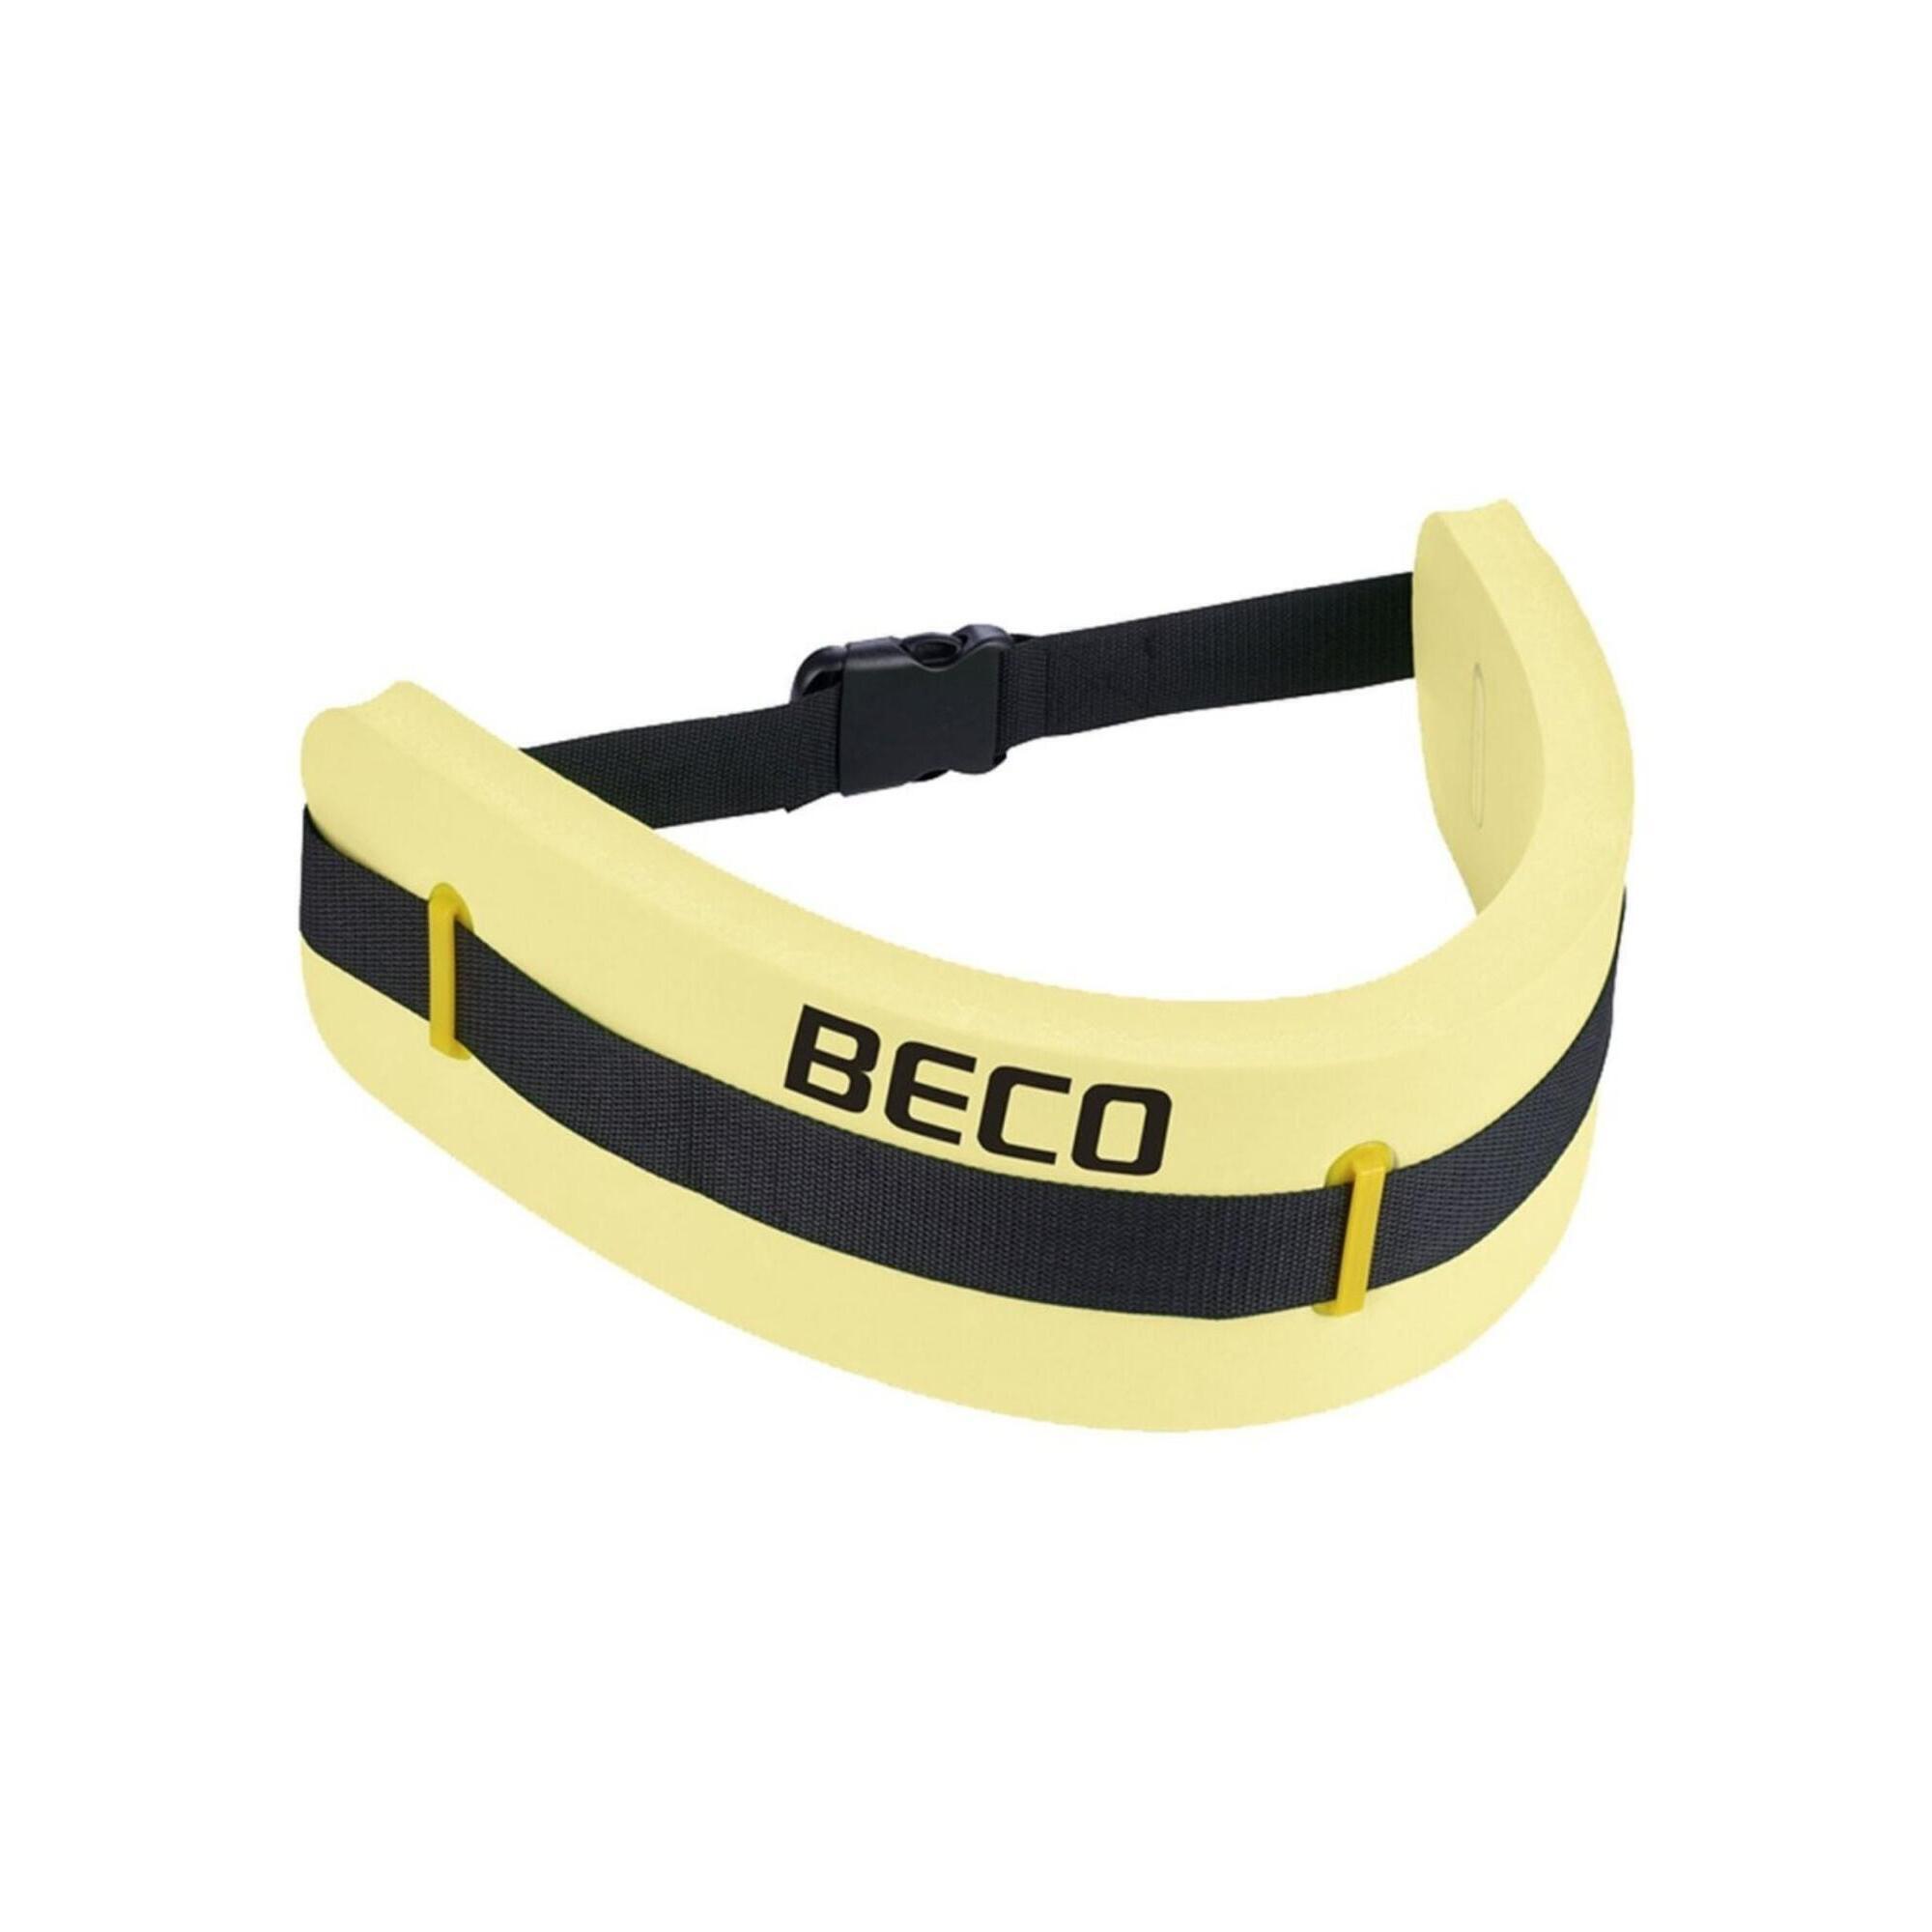 BECO Swim Monobelt - 4 Sizes 1/4